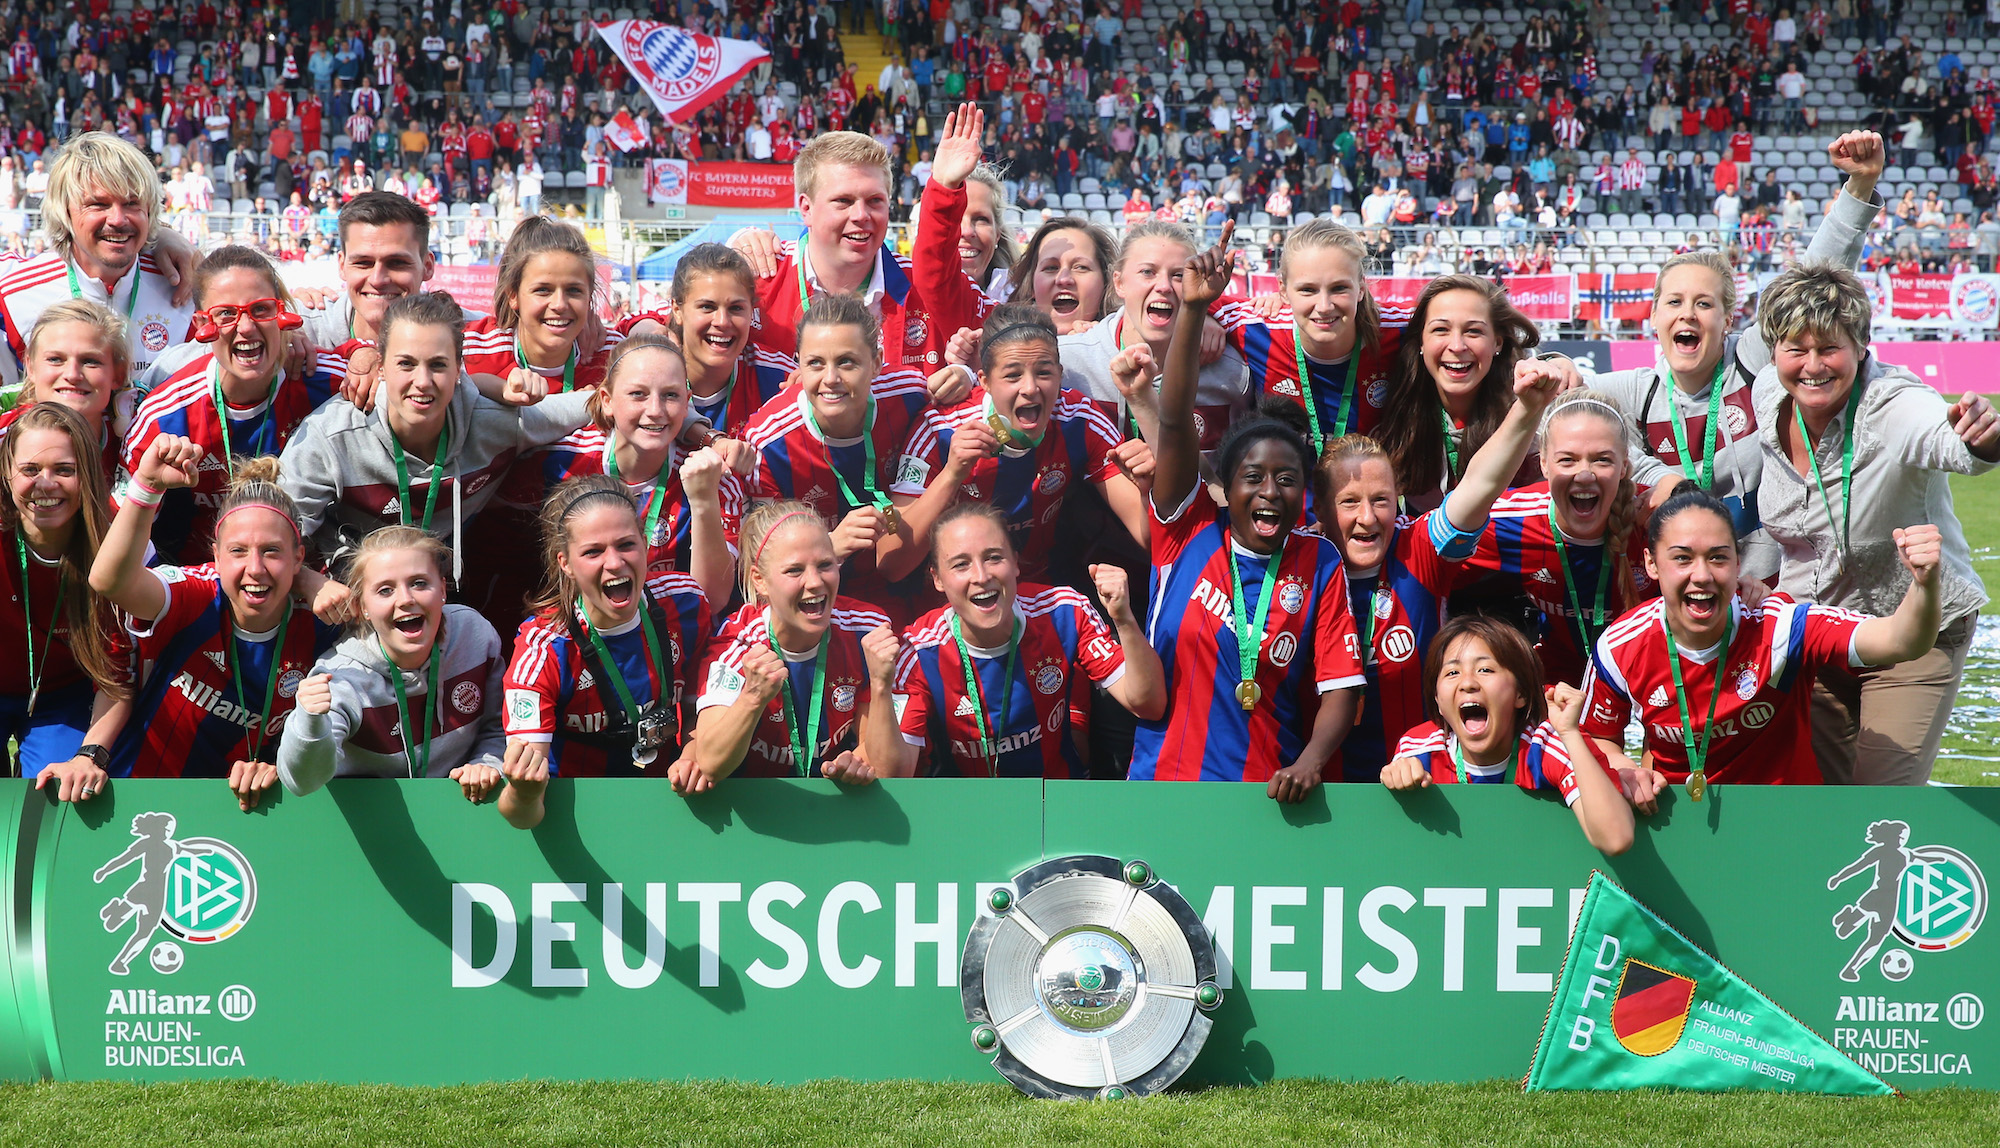 Bayern’s women’s team wins the Bundesliga title against Essen in 2015